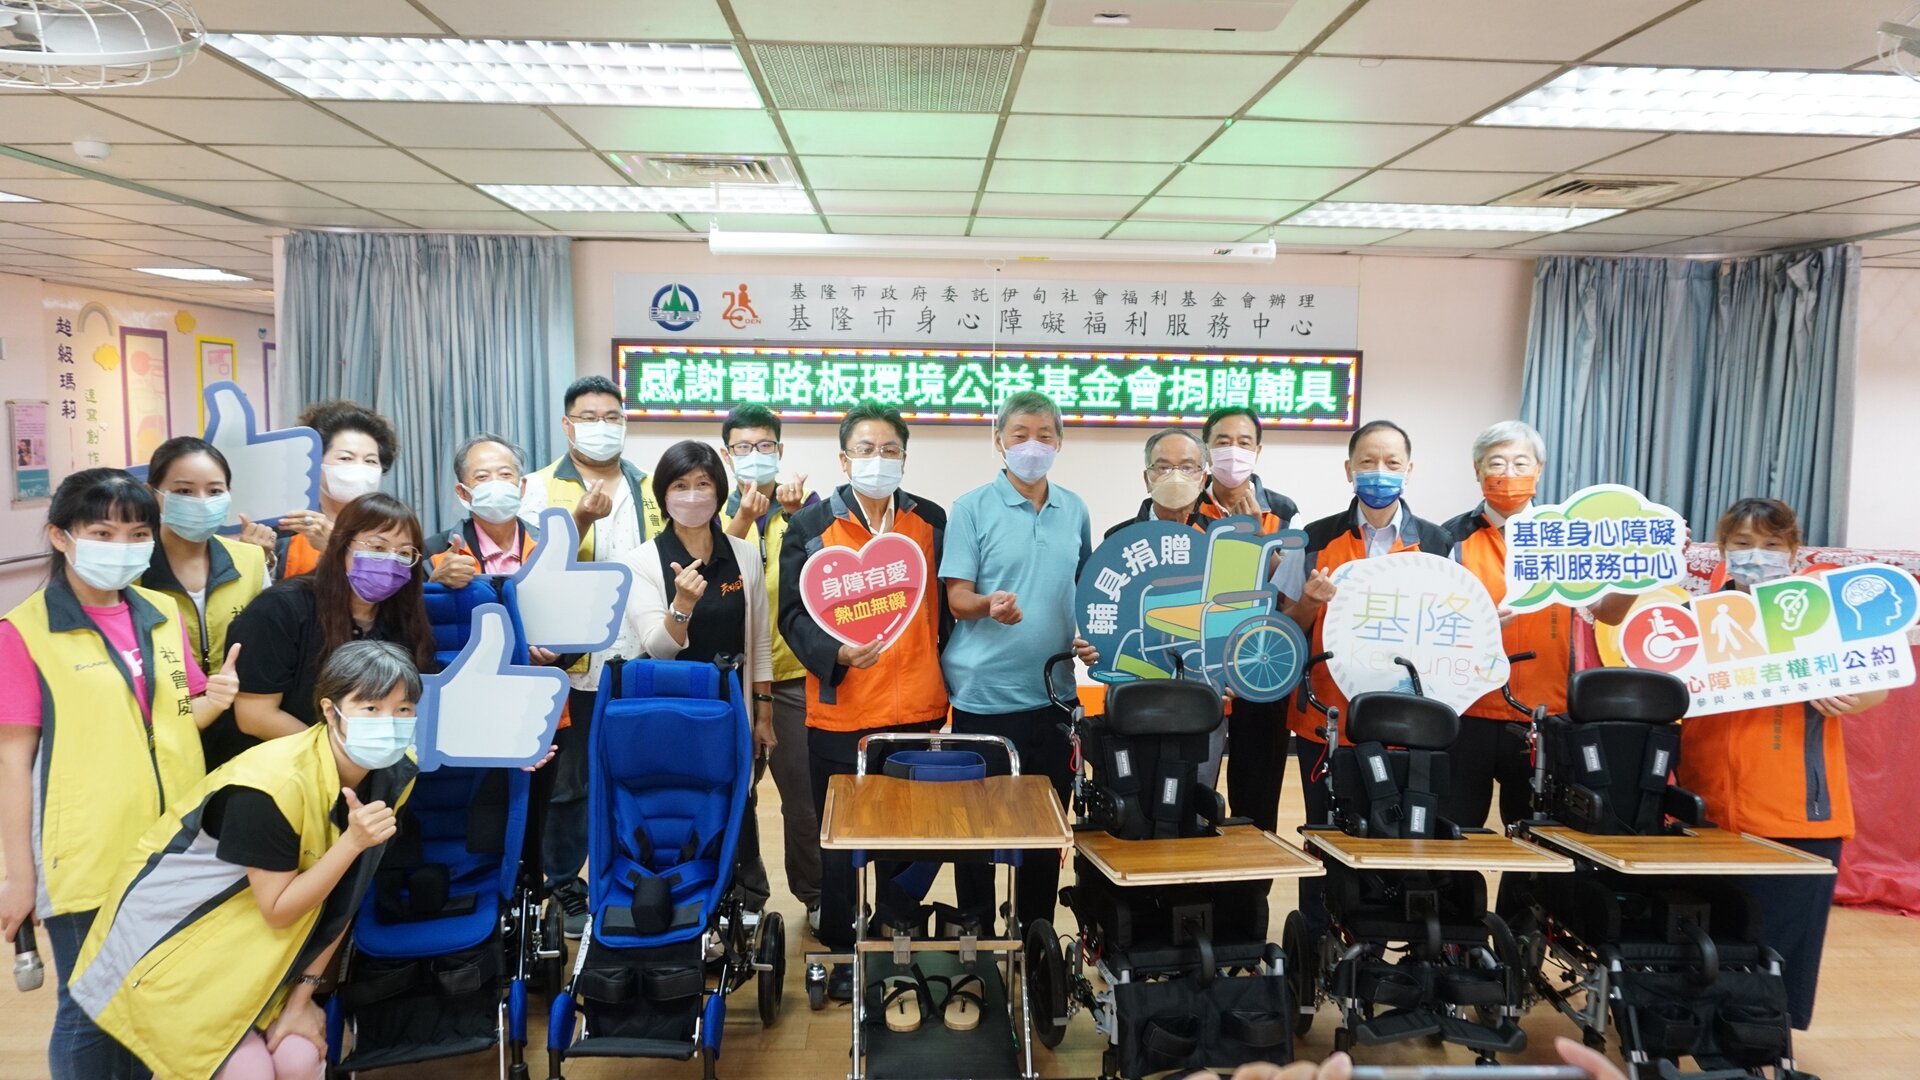 20220921_參與贊助基隆身障中心教輔具活動人員與捐助的教輔具共同合影留念。